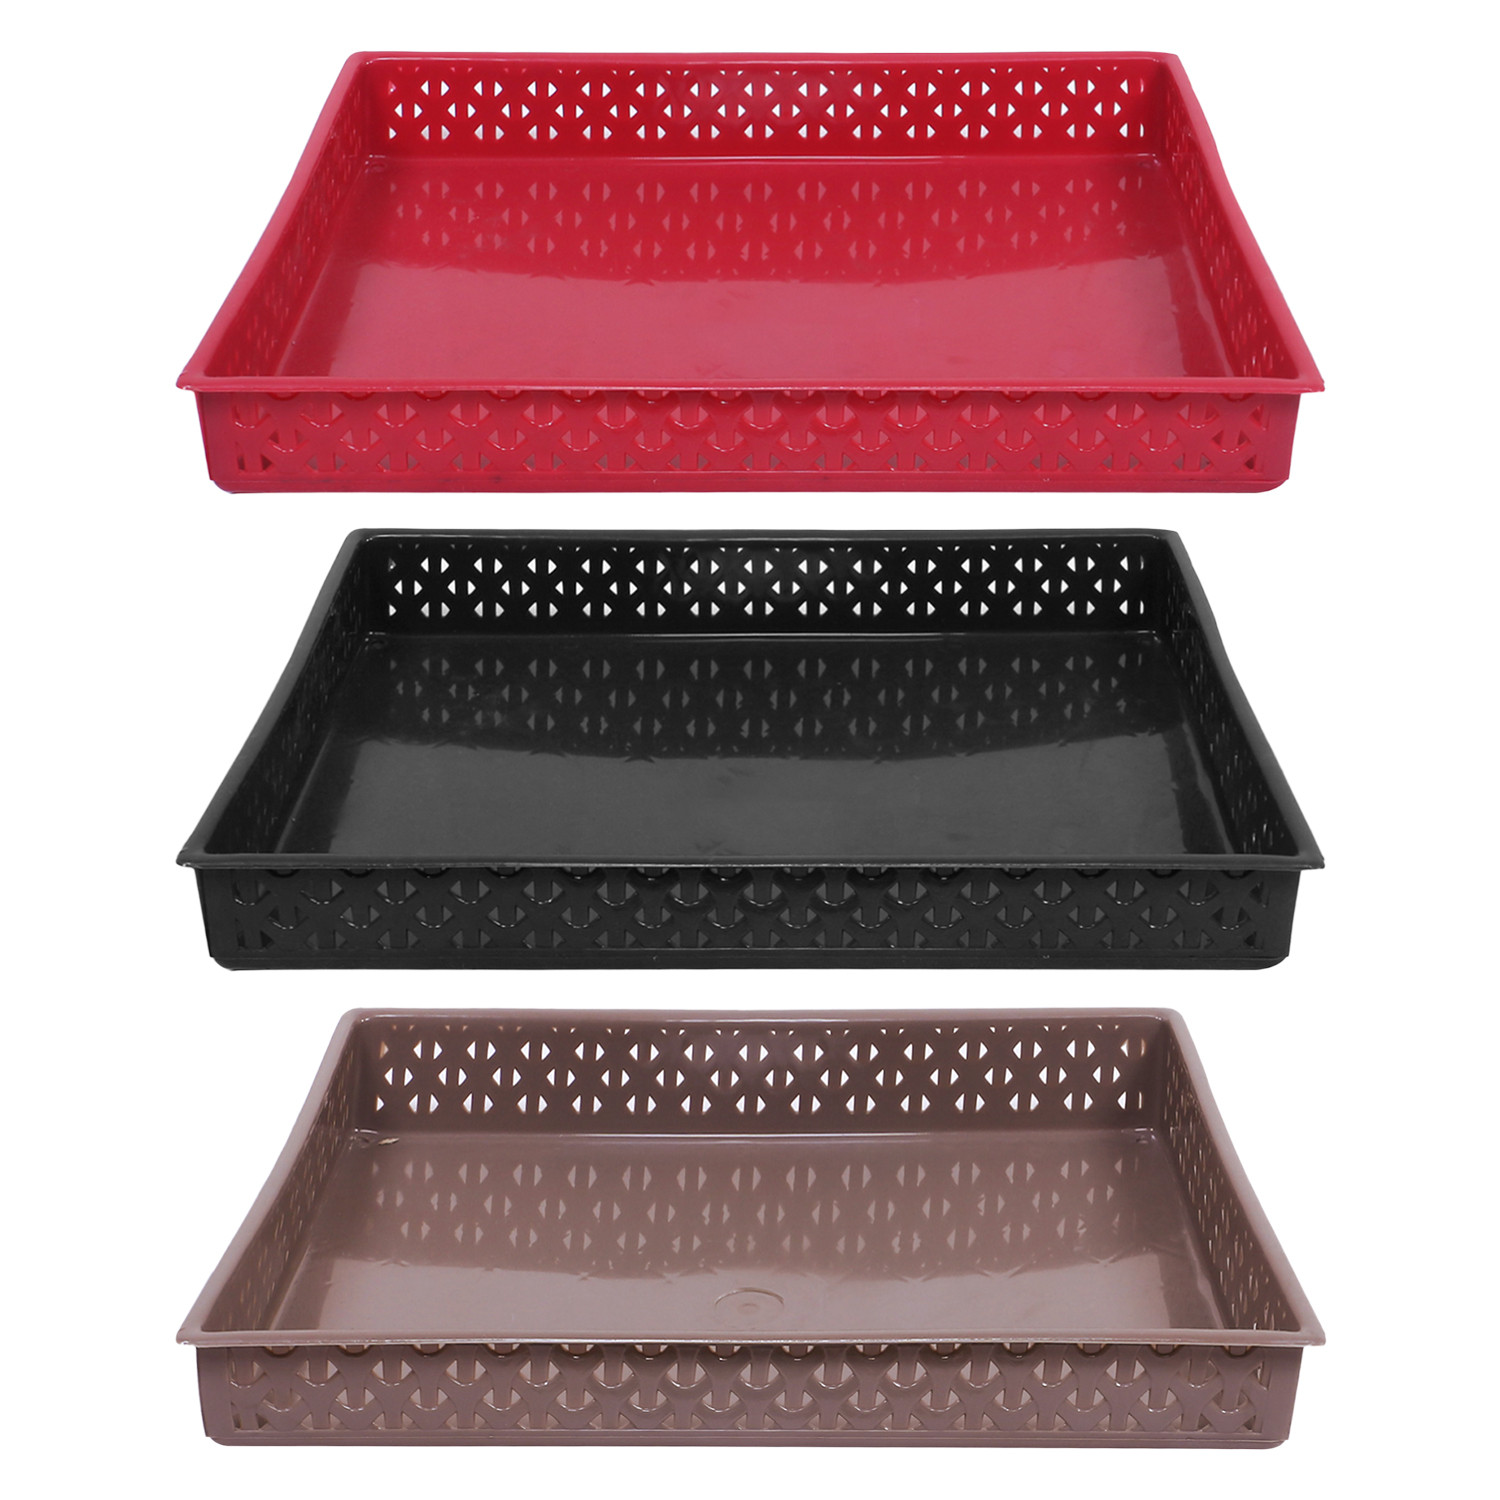 Kuber Industries Storage Tray|Versatile Plastic Storage Organizer|Rectangular Tray for Kitchen Storage|Storage Tray for office|ALEXA-15|Pack of 3 (Multicolor)